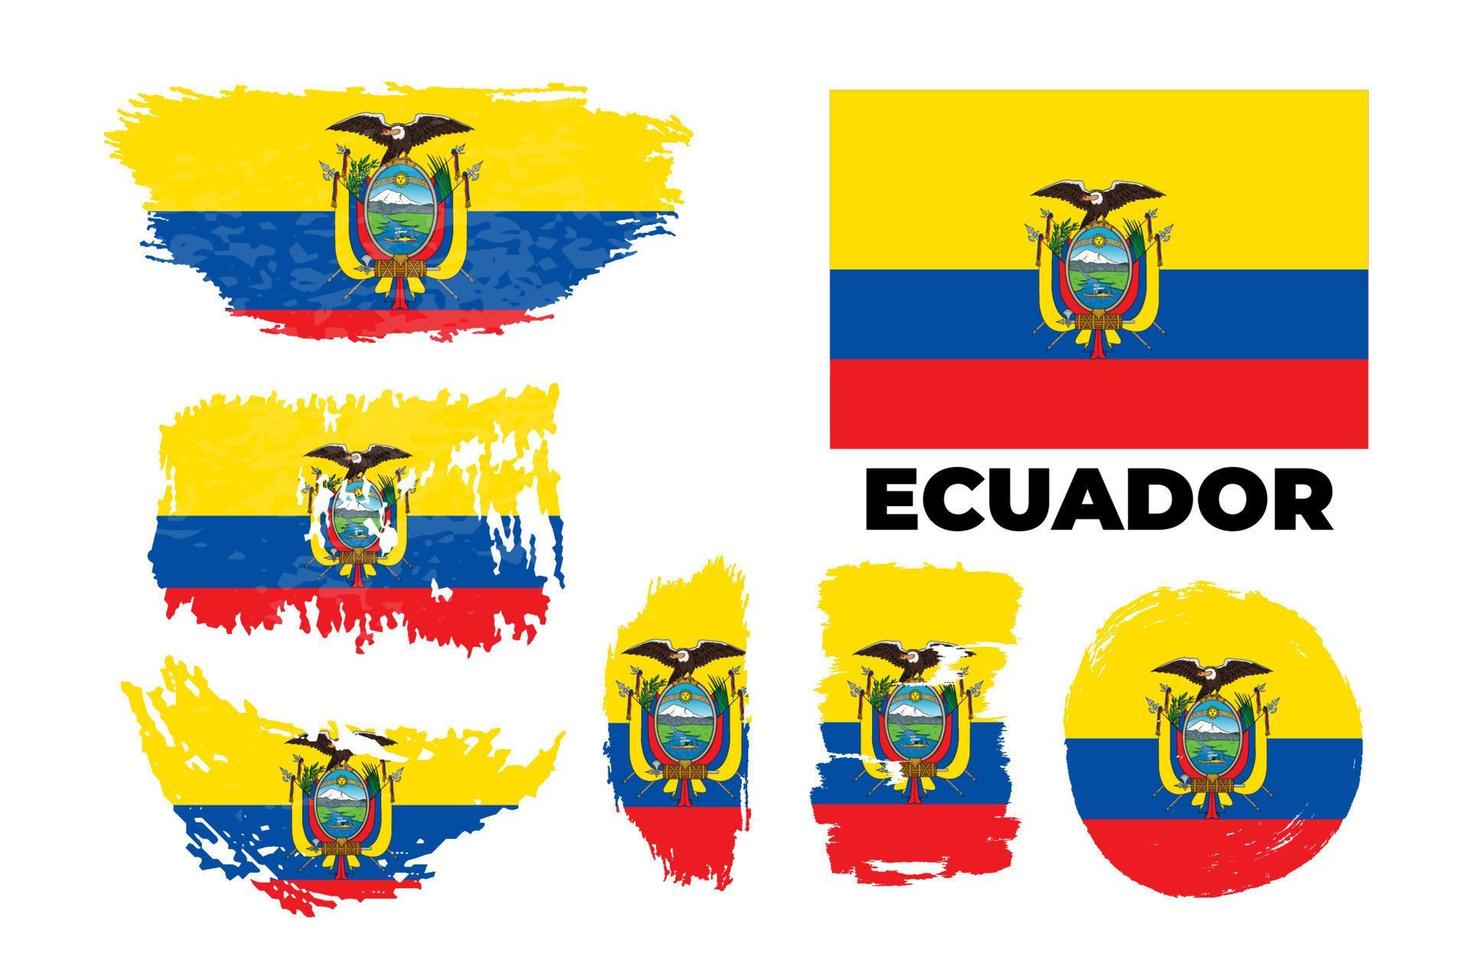 bandeira do equador, república do equador. modelo para design de prêmio, um documento oficial com a bandeira do equador. conjunto de ilustração de estoque grunge vector brilhante e colorido.